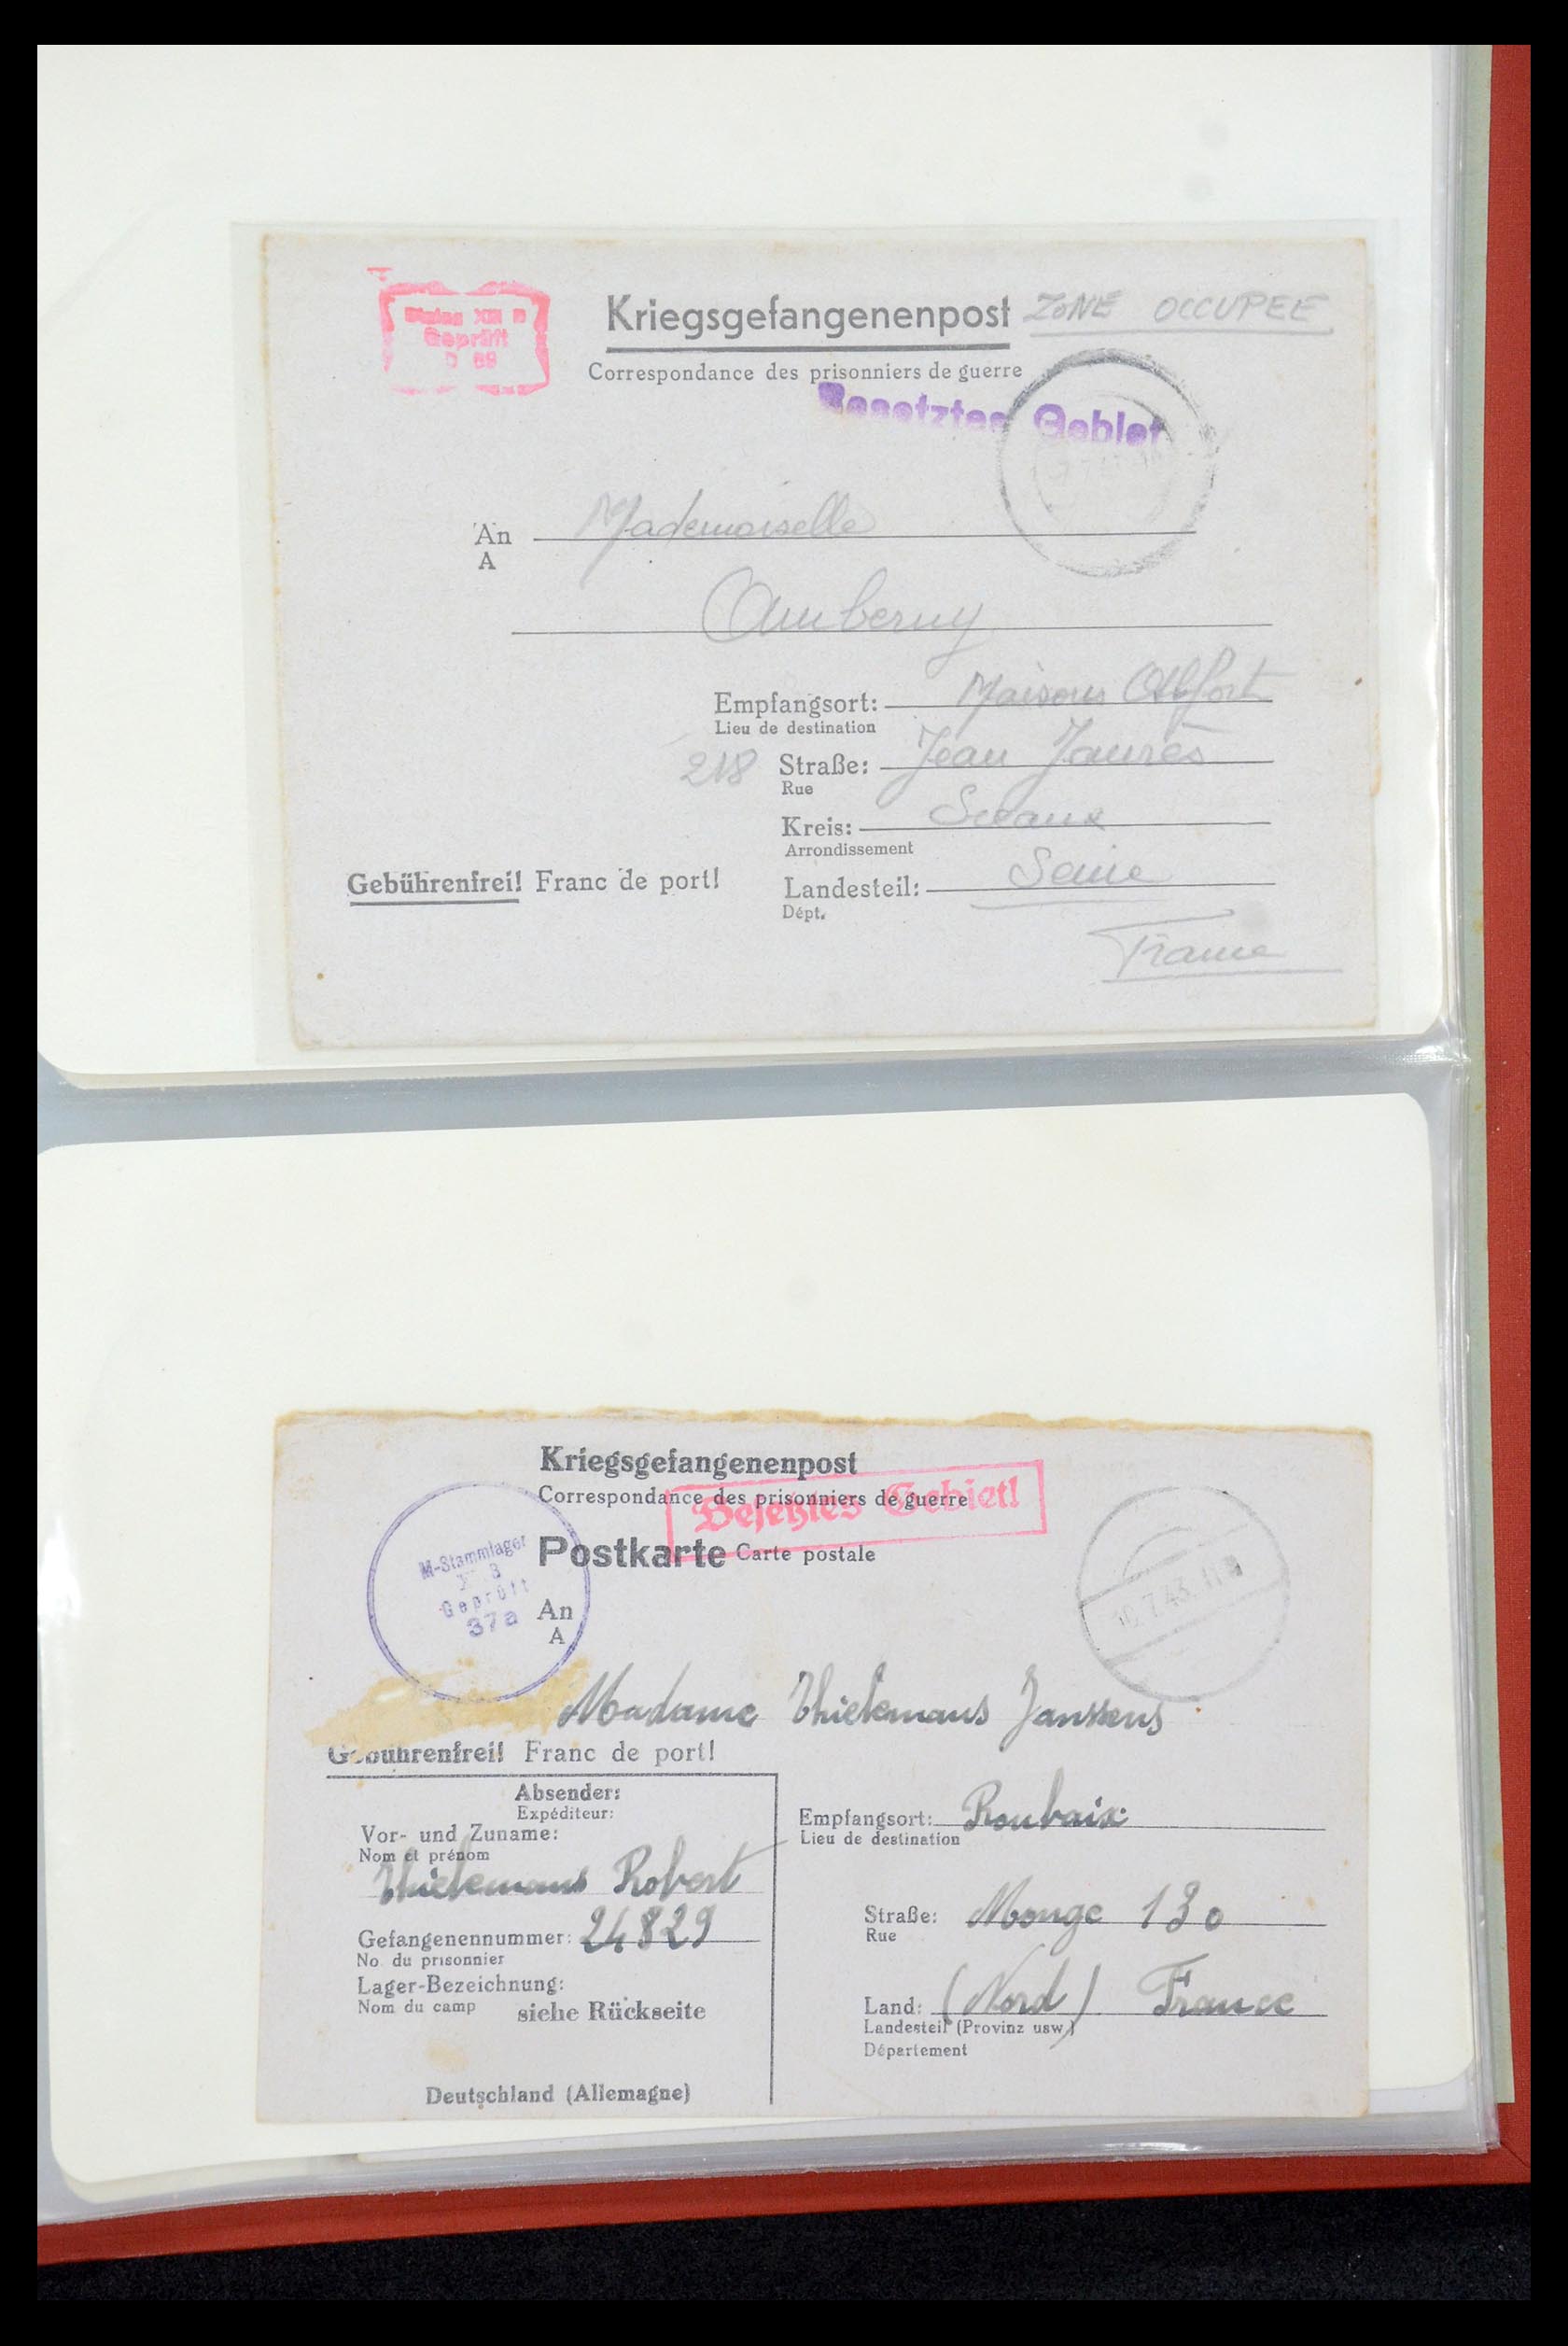 35599 033 - Stamp Collection 35599 Germany prisoner of war cards 1940-1944.